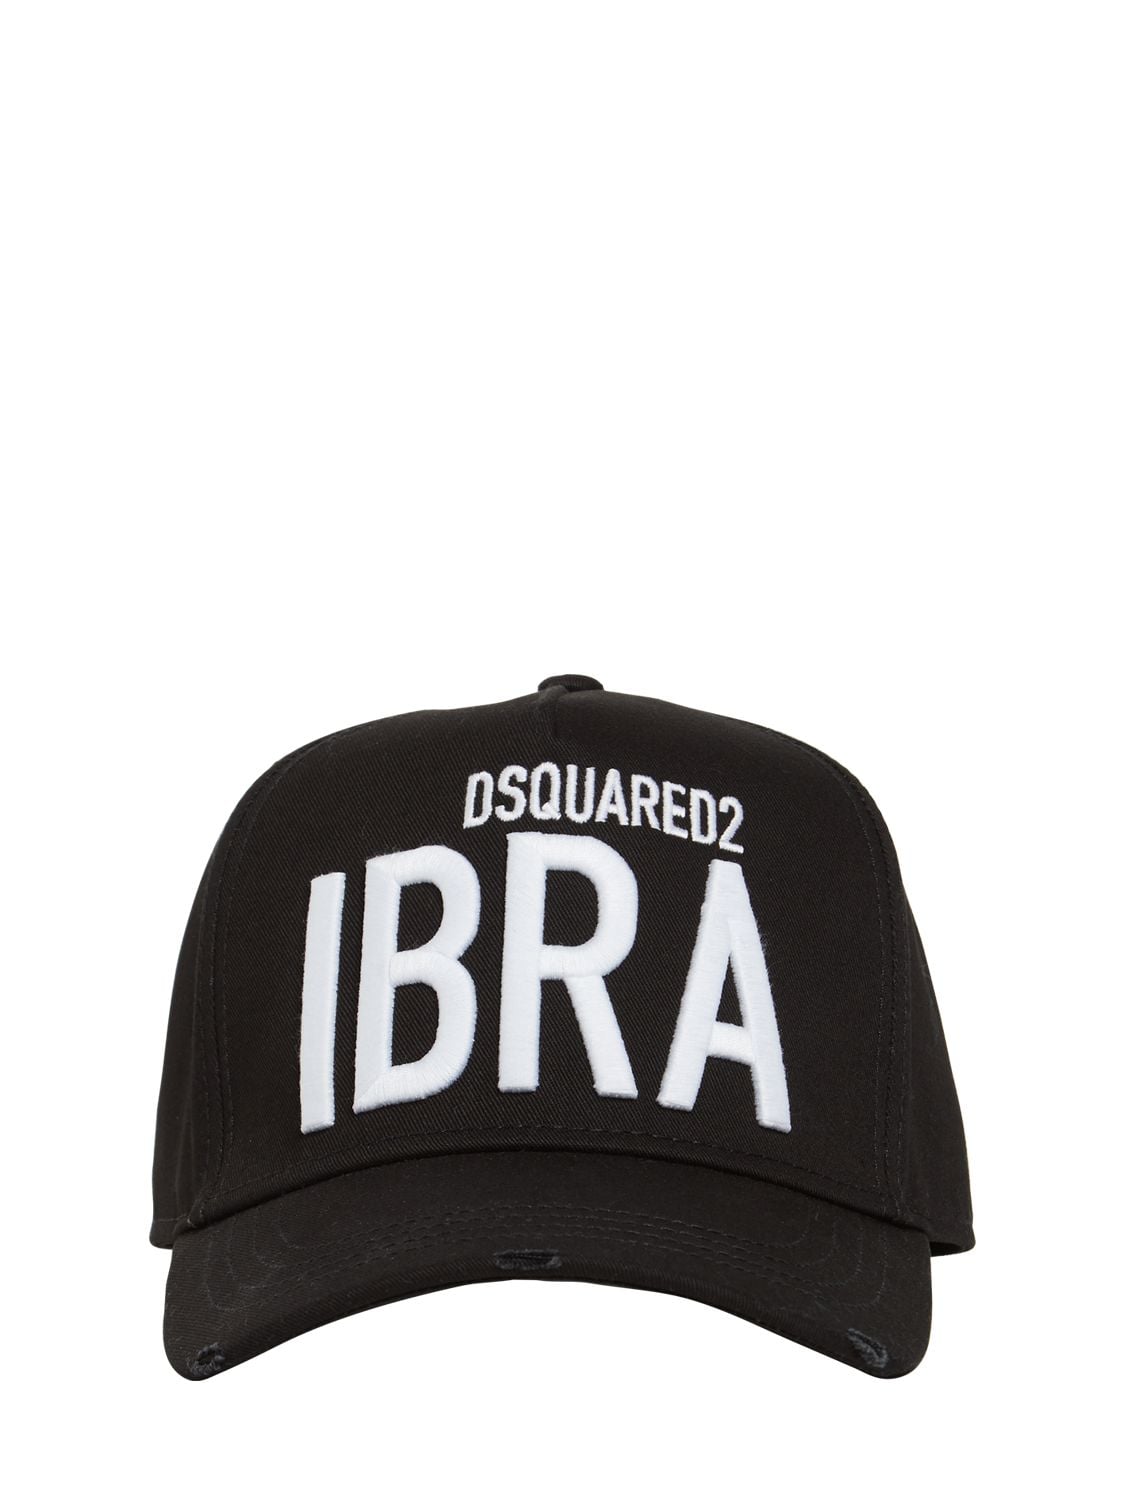 DSQUARED2 IBRA COTTON GABARDINE CAP